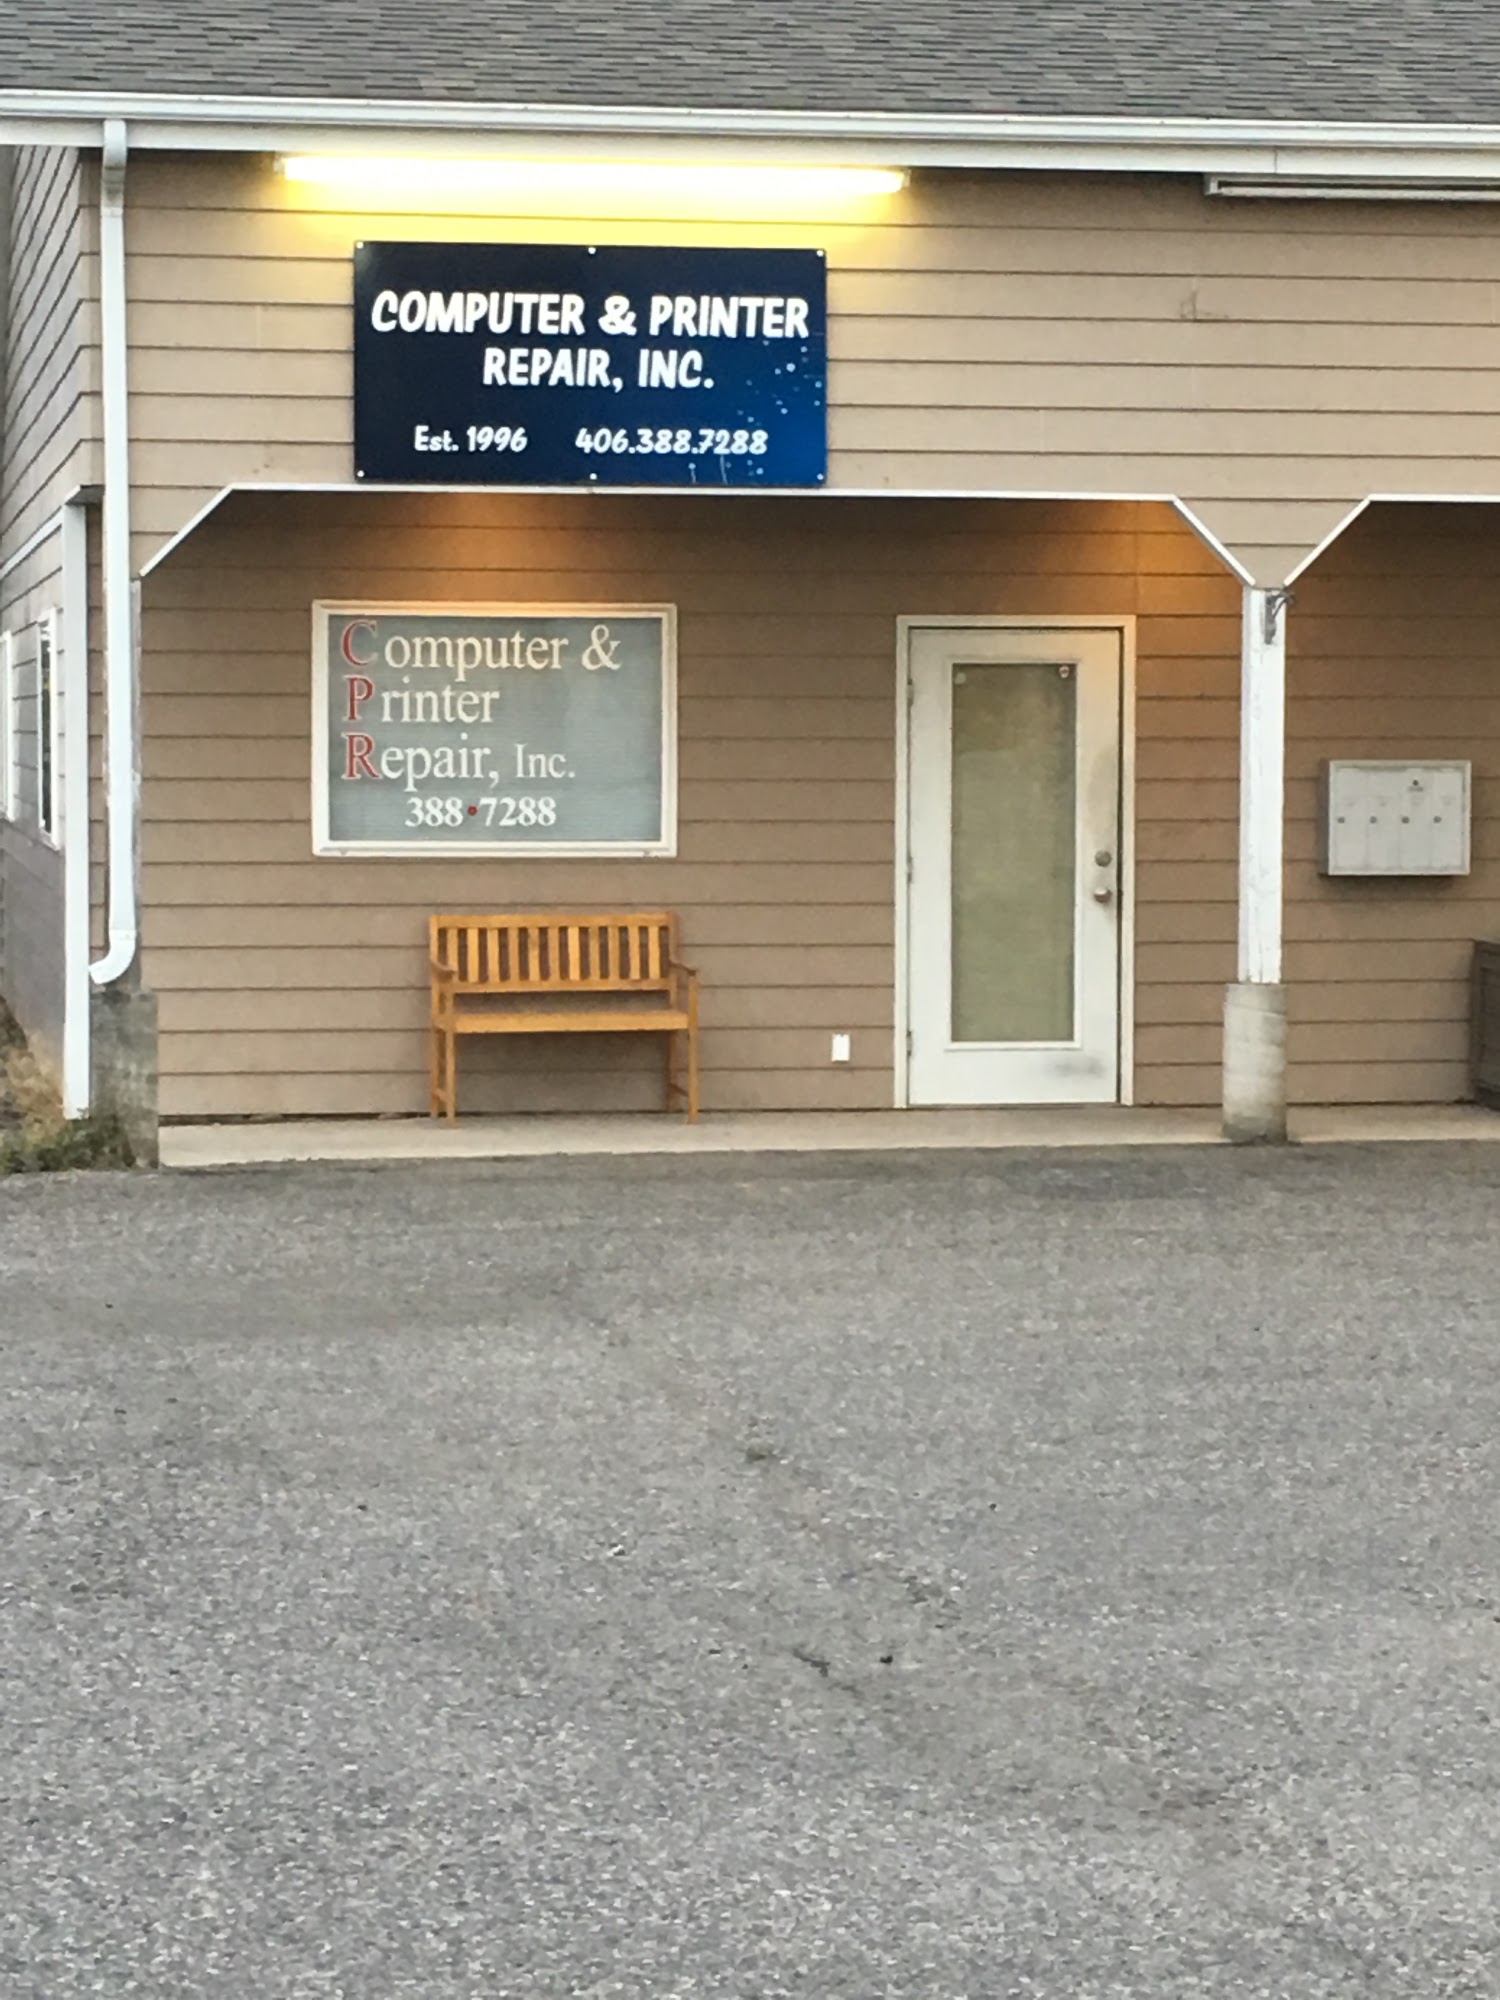 Computer & Printer Repair, Inc.